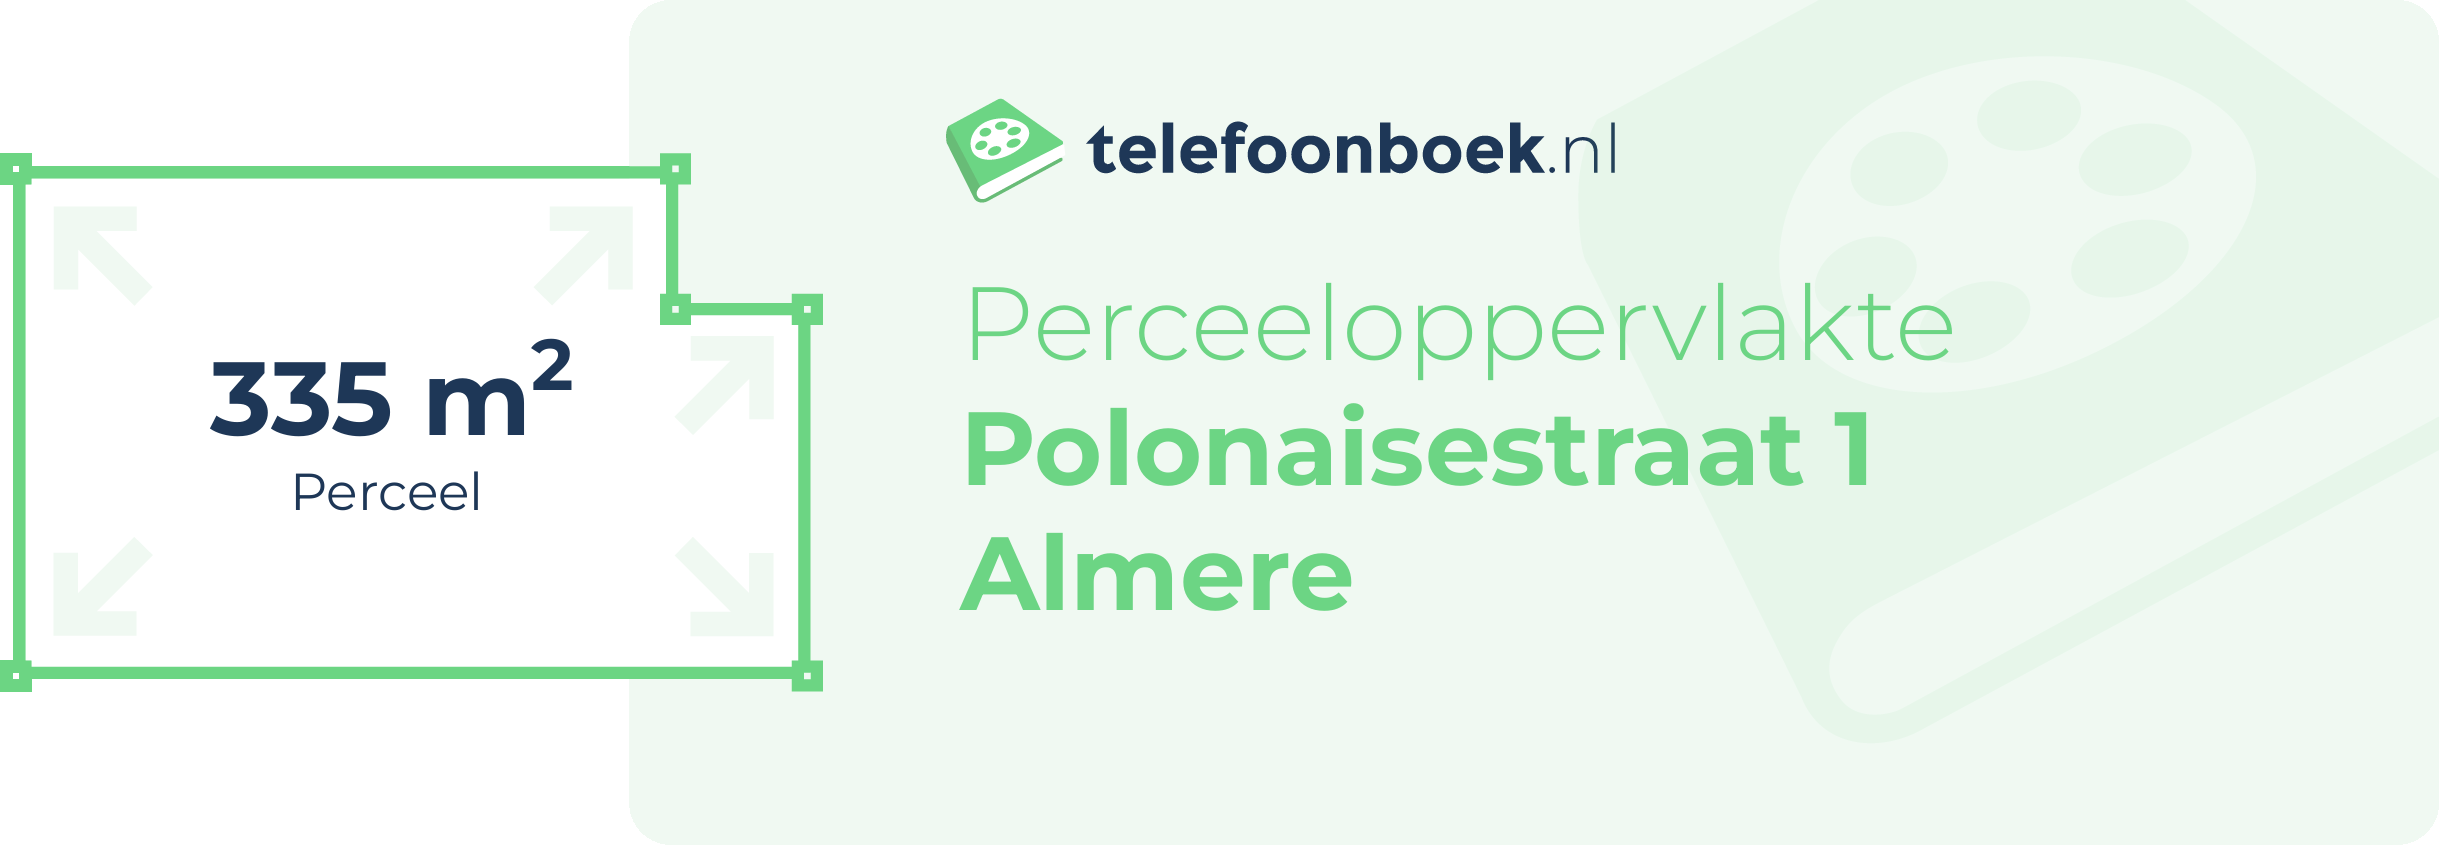 Perceeloppervlakte Polonaisestraat 1 Almere